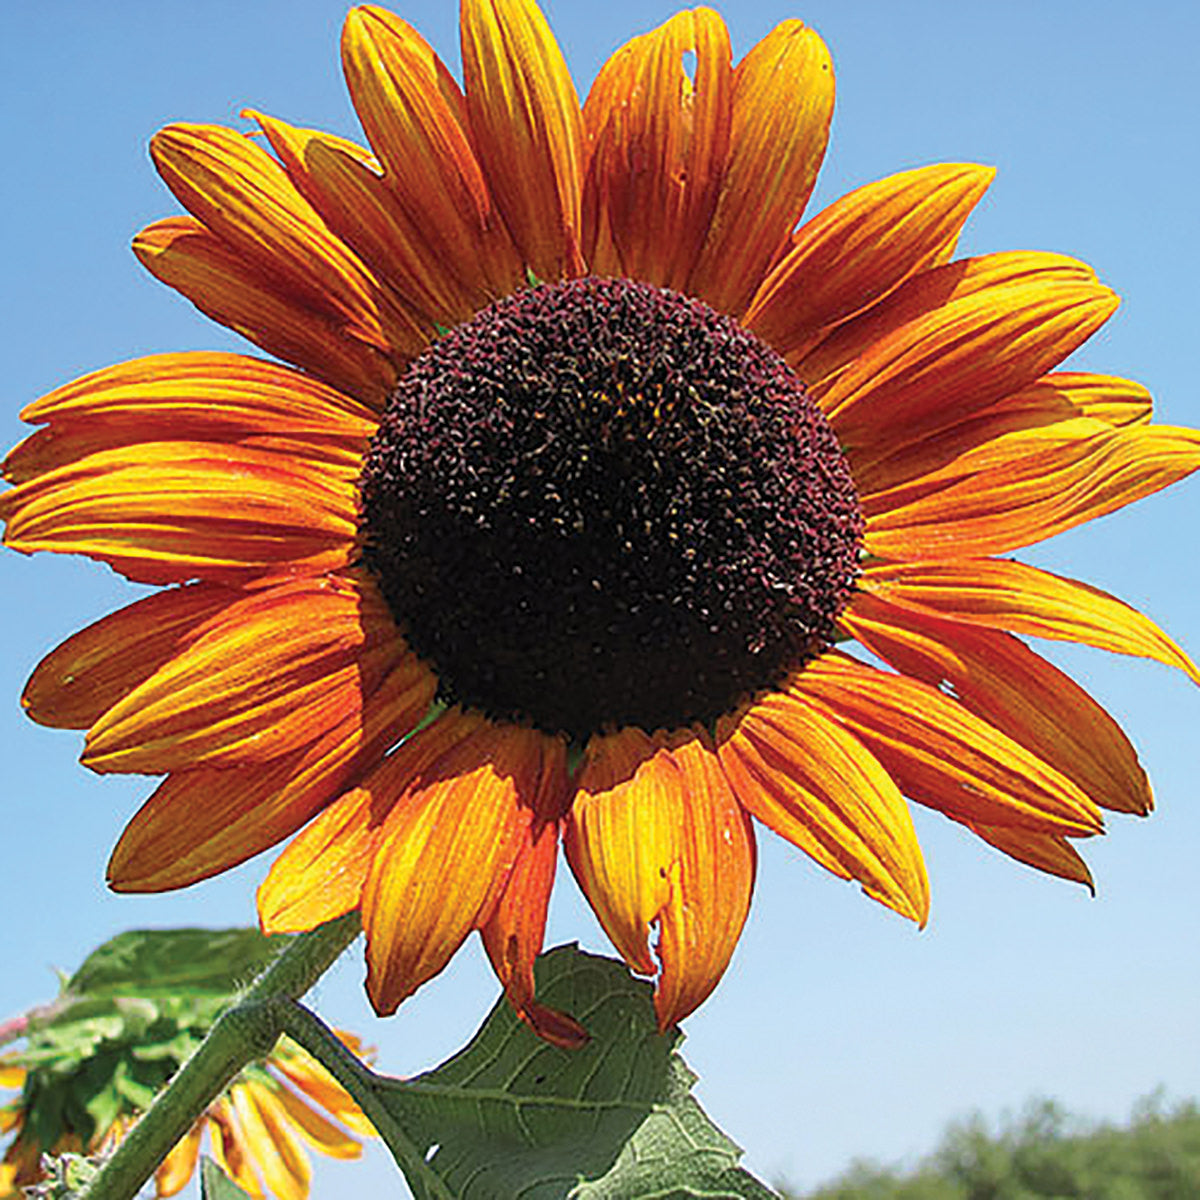 Certified Organic Autumn Beauty Mix Sunflower Seeds